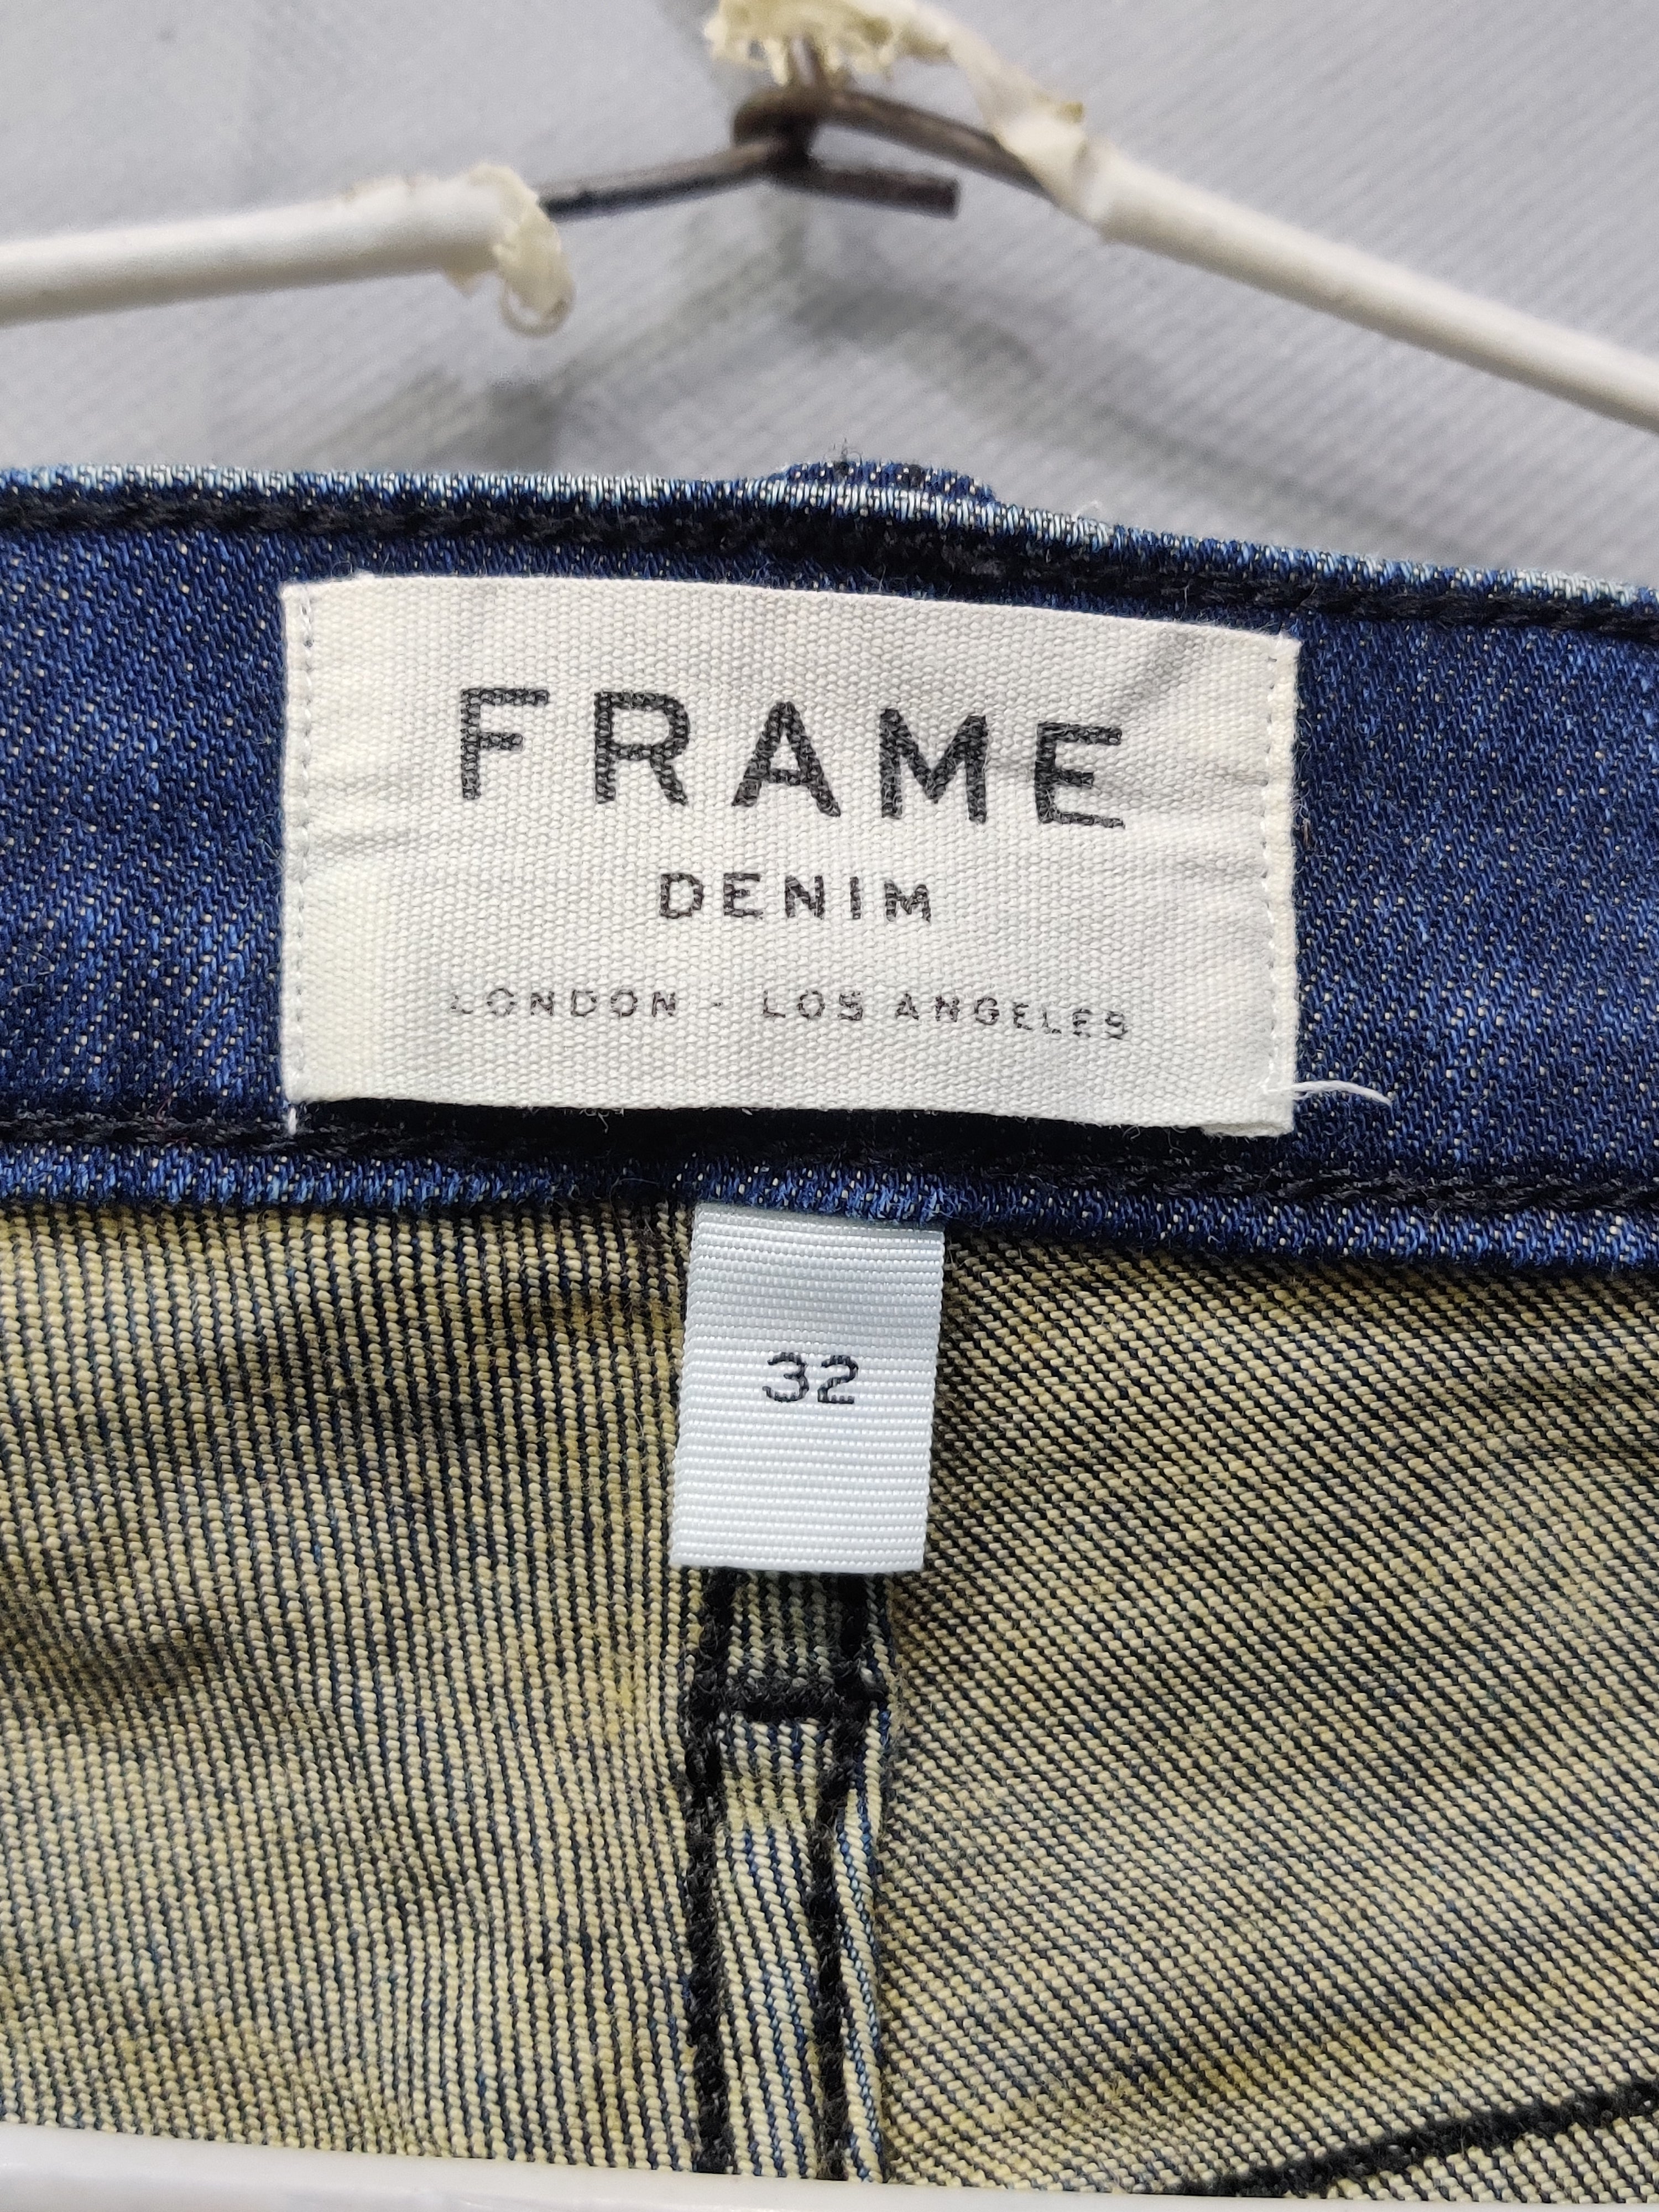 Frame Branded Original Denim Jeans For Men